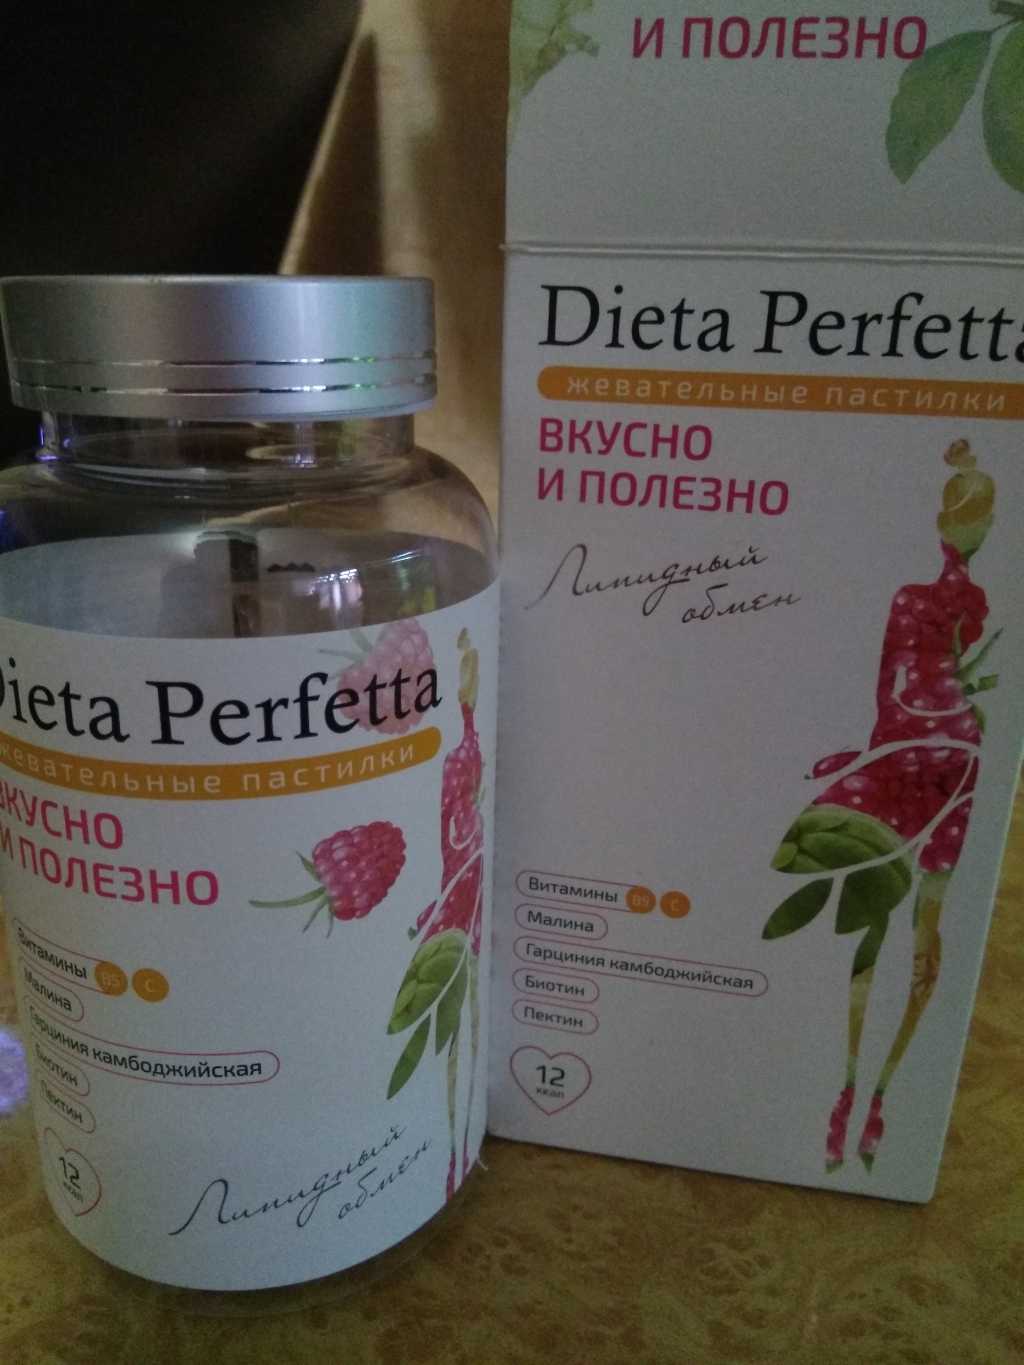 Dieta Perfetta. Липидный обмен - Для улучшения метаболизма и снижения веса